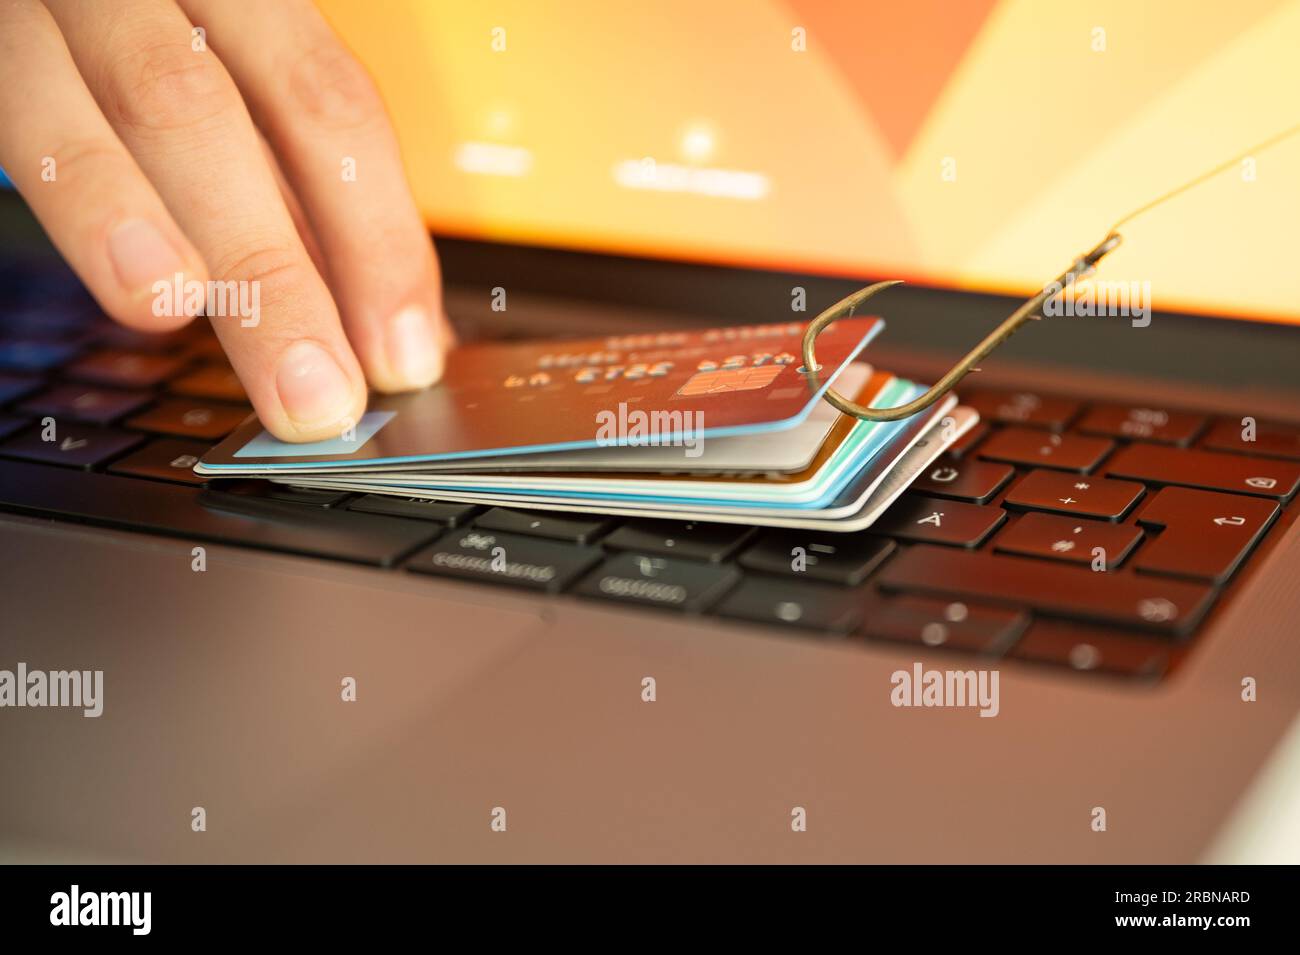 Visualización de una persona que intenta prevenir el phishing y el fraude en línea sosteniendo una tarjeta de crédito filtrada en un teclado de PC que está colgado de un gancho Foto de stock